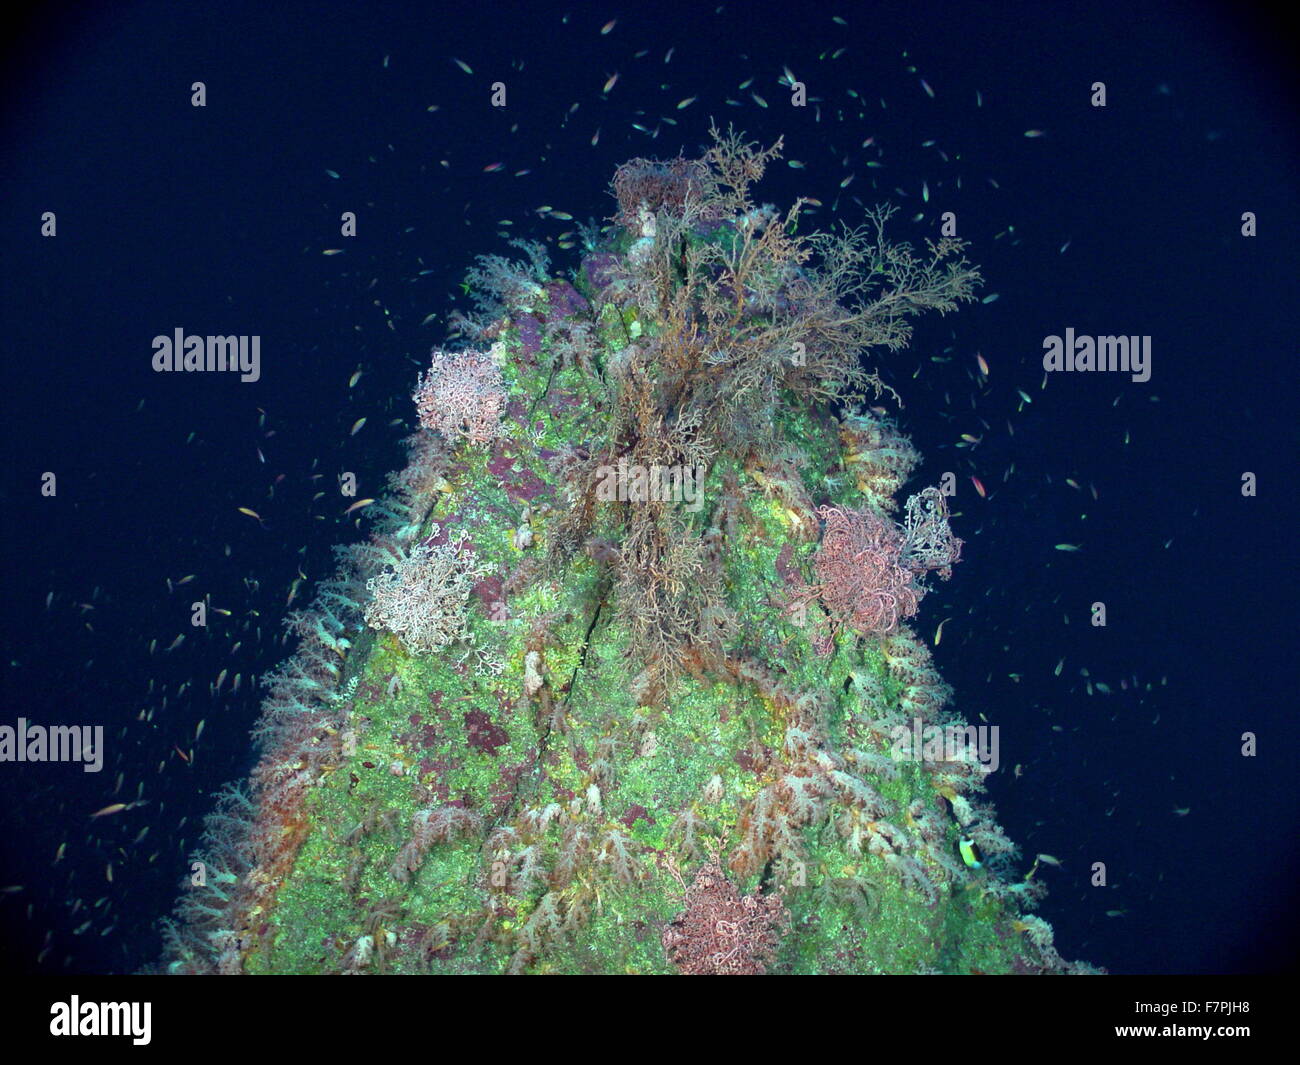 Spitze mit rosa Korb Seesterne bedeckt. Aus der Region Mariana Arc, westlichen Pazifischen Ozean. Vom Jahr 2004 Stockfoto